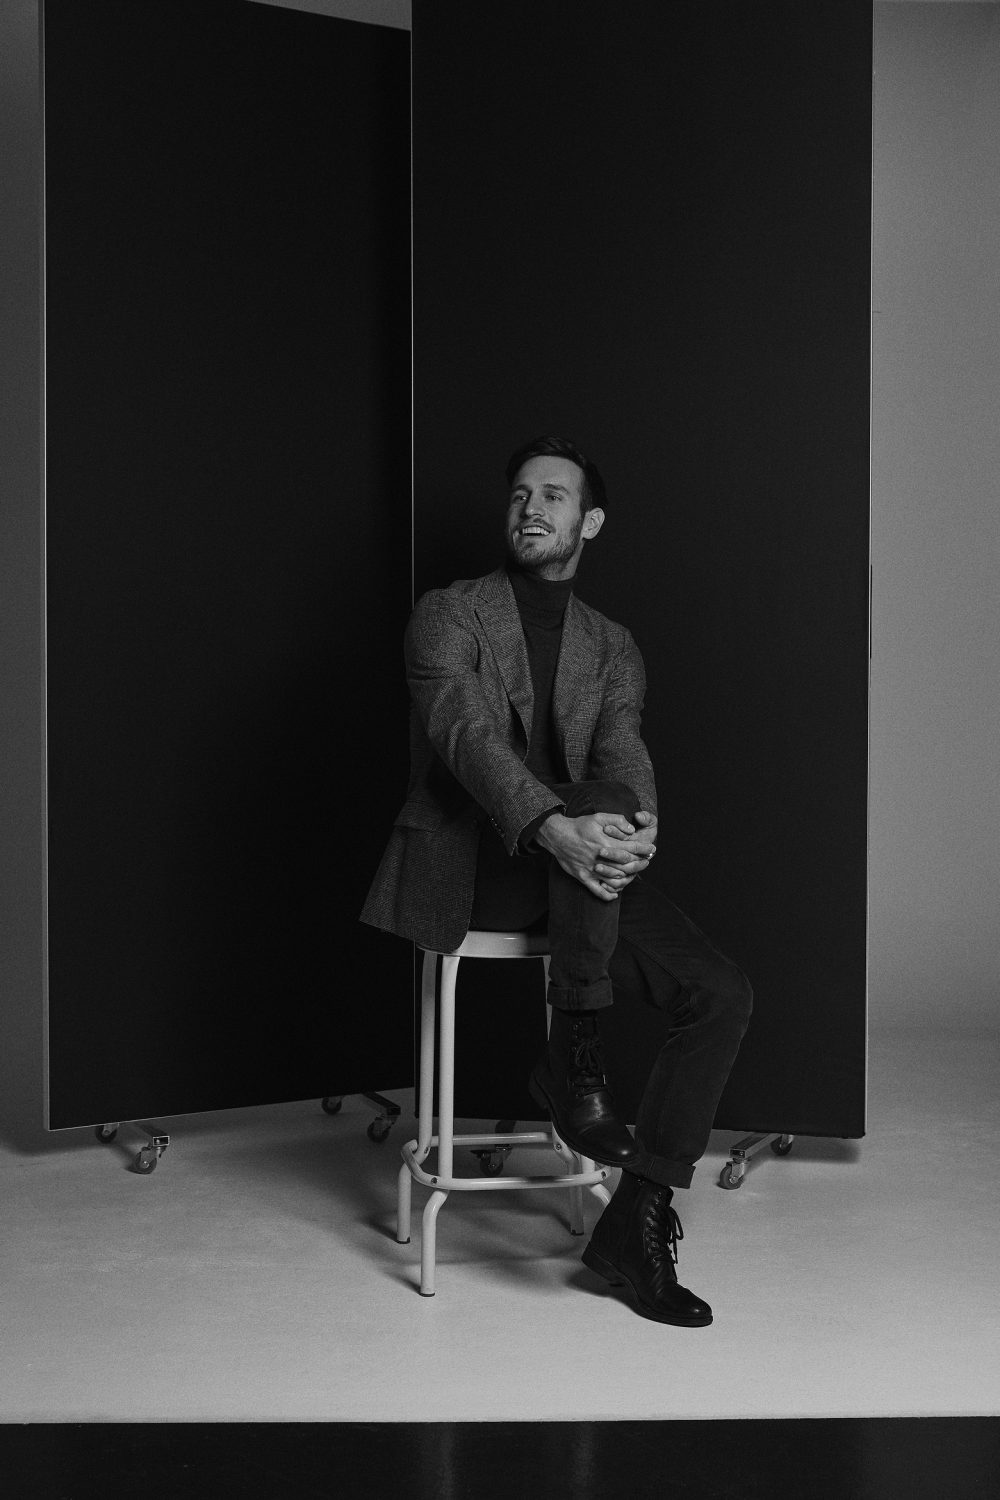 Schwarz Weiß Portrait von einem Mann im Studio